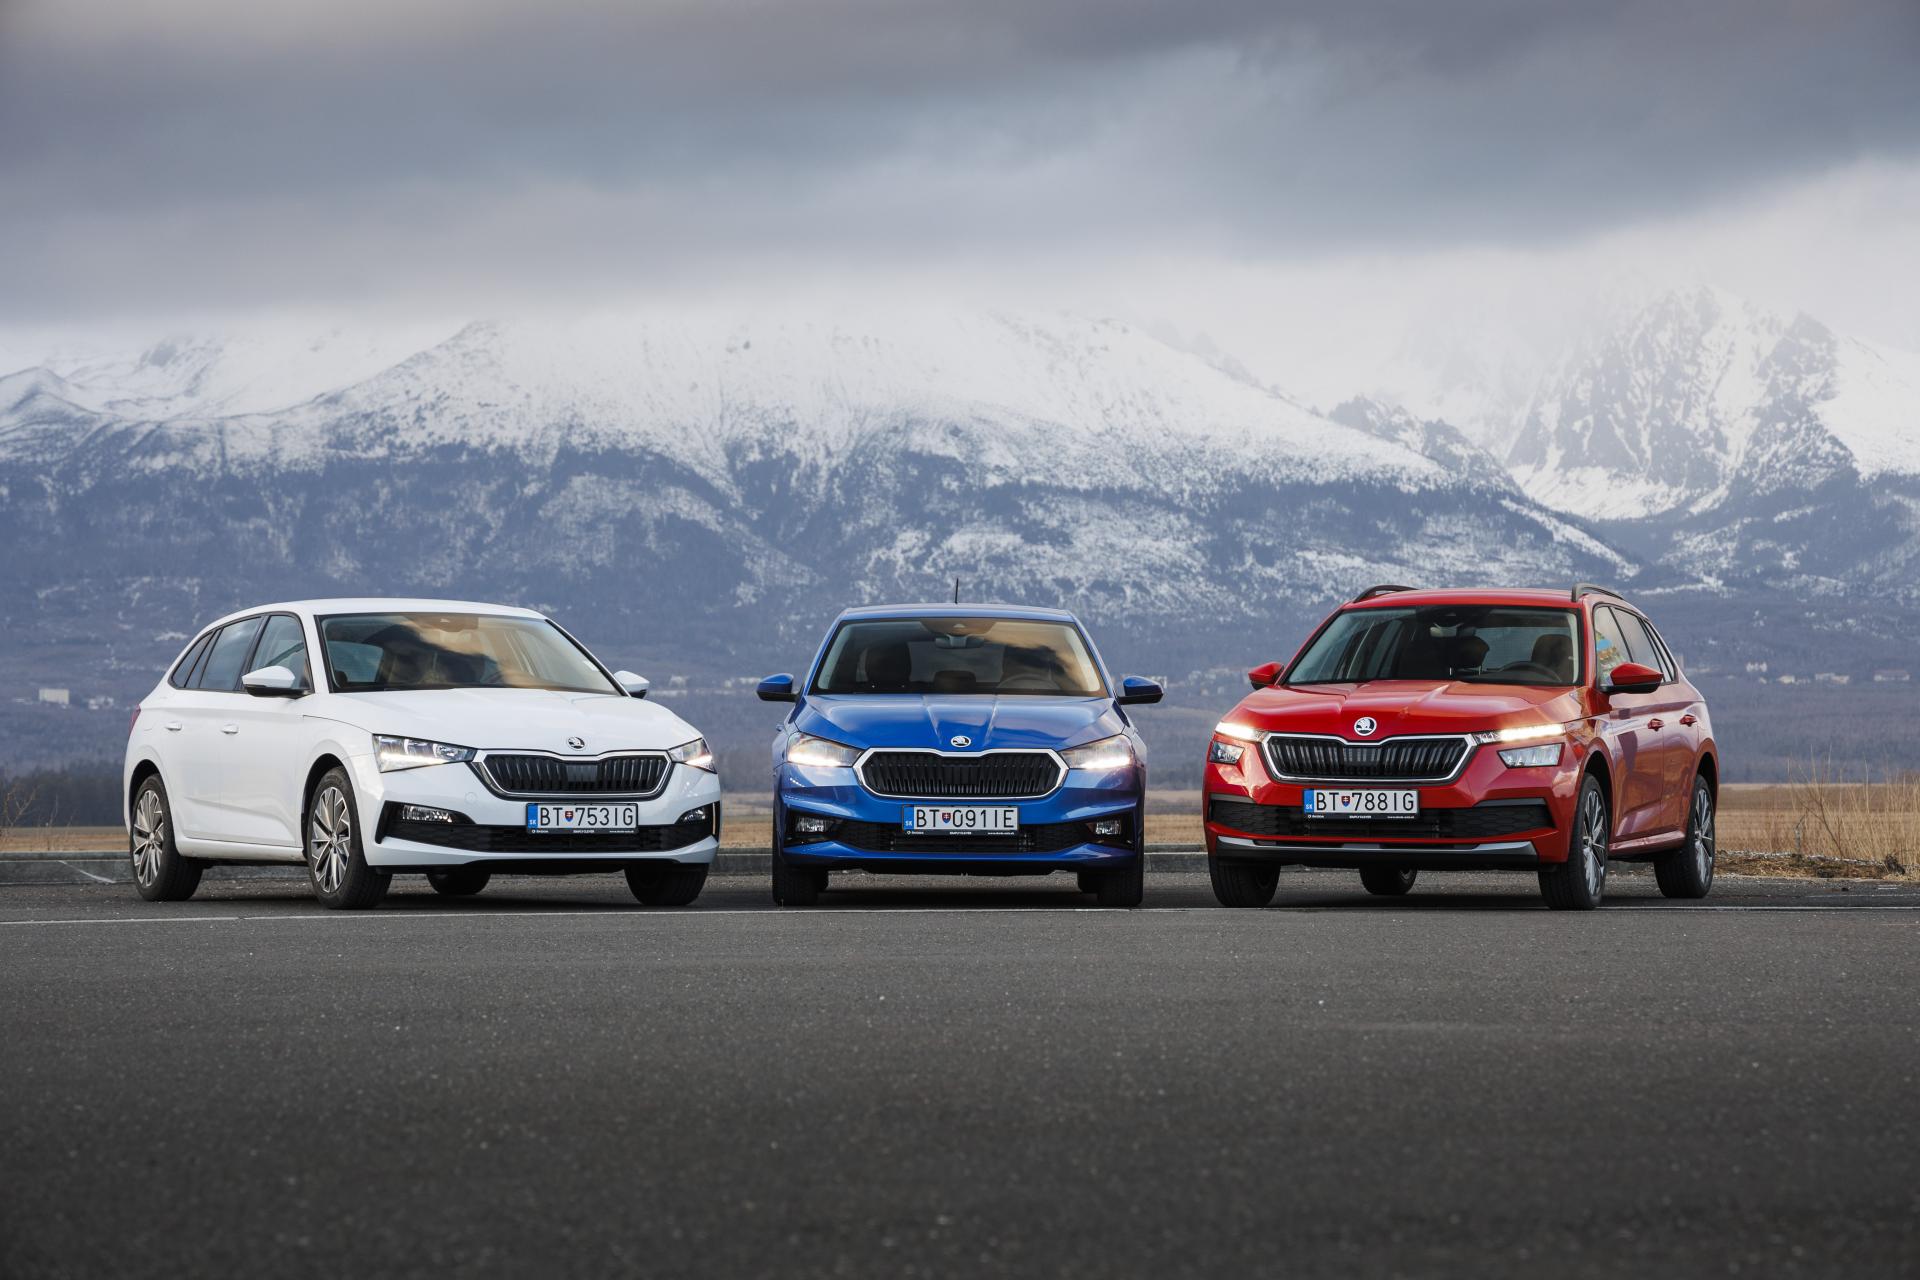 V medziročnom porovnaní dodala Škoda zákazníkom o 2 443 vozidiel viac, čo predstavuje nárast o rekordných 37 percent. Drží si tak takmer 20-percentný podiel na trhu s veľkým náskokom pred konkurenciou.